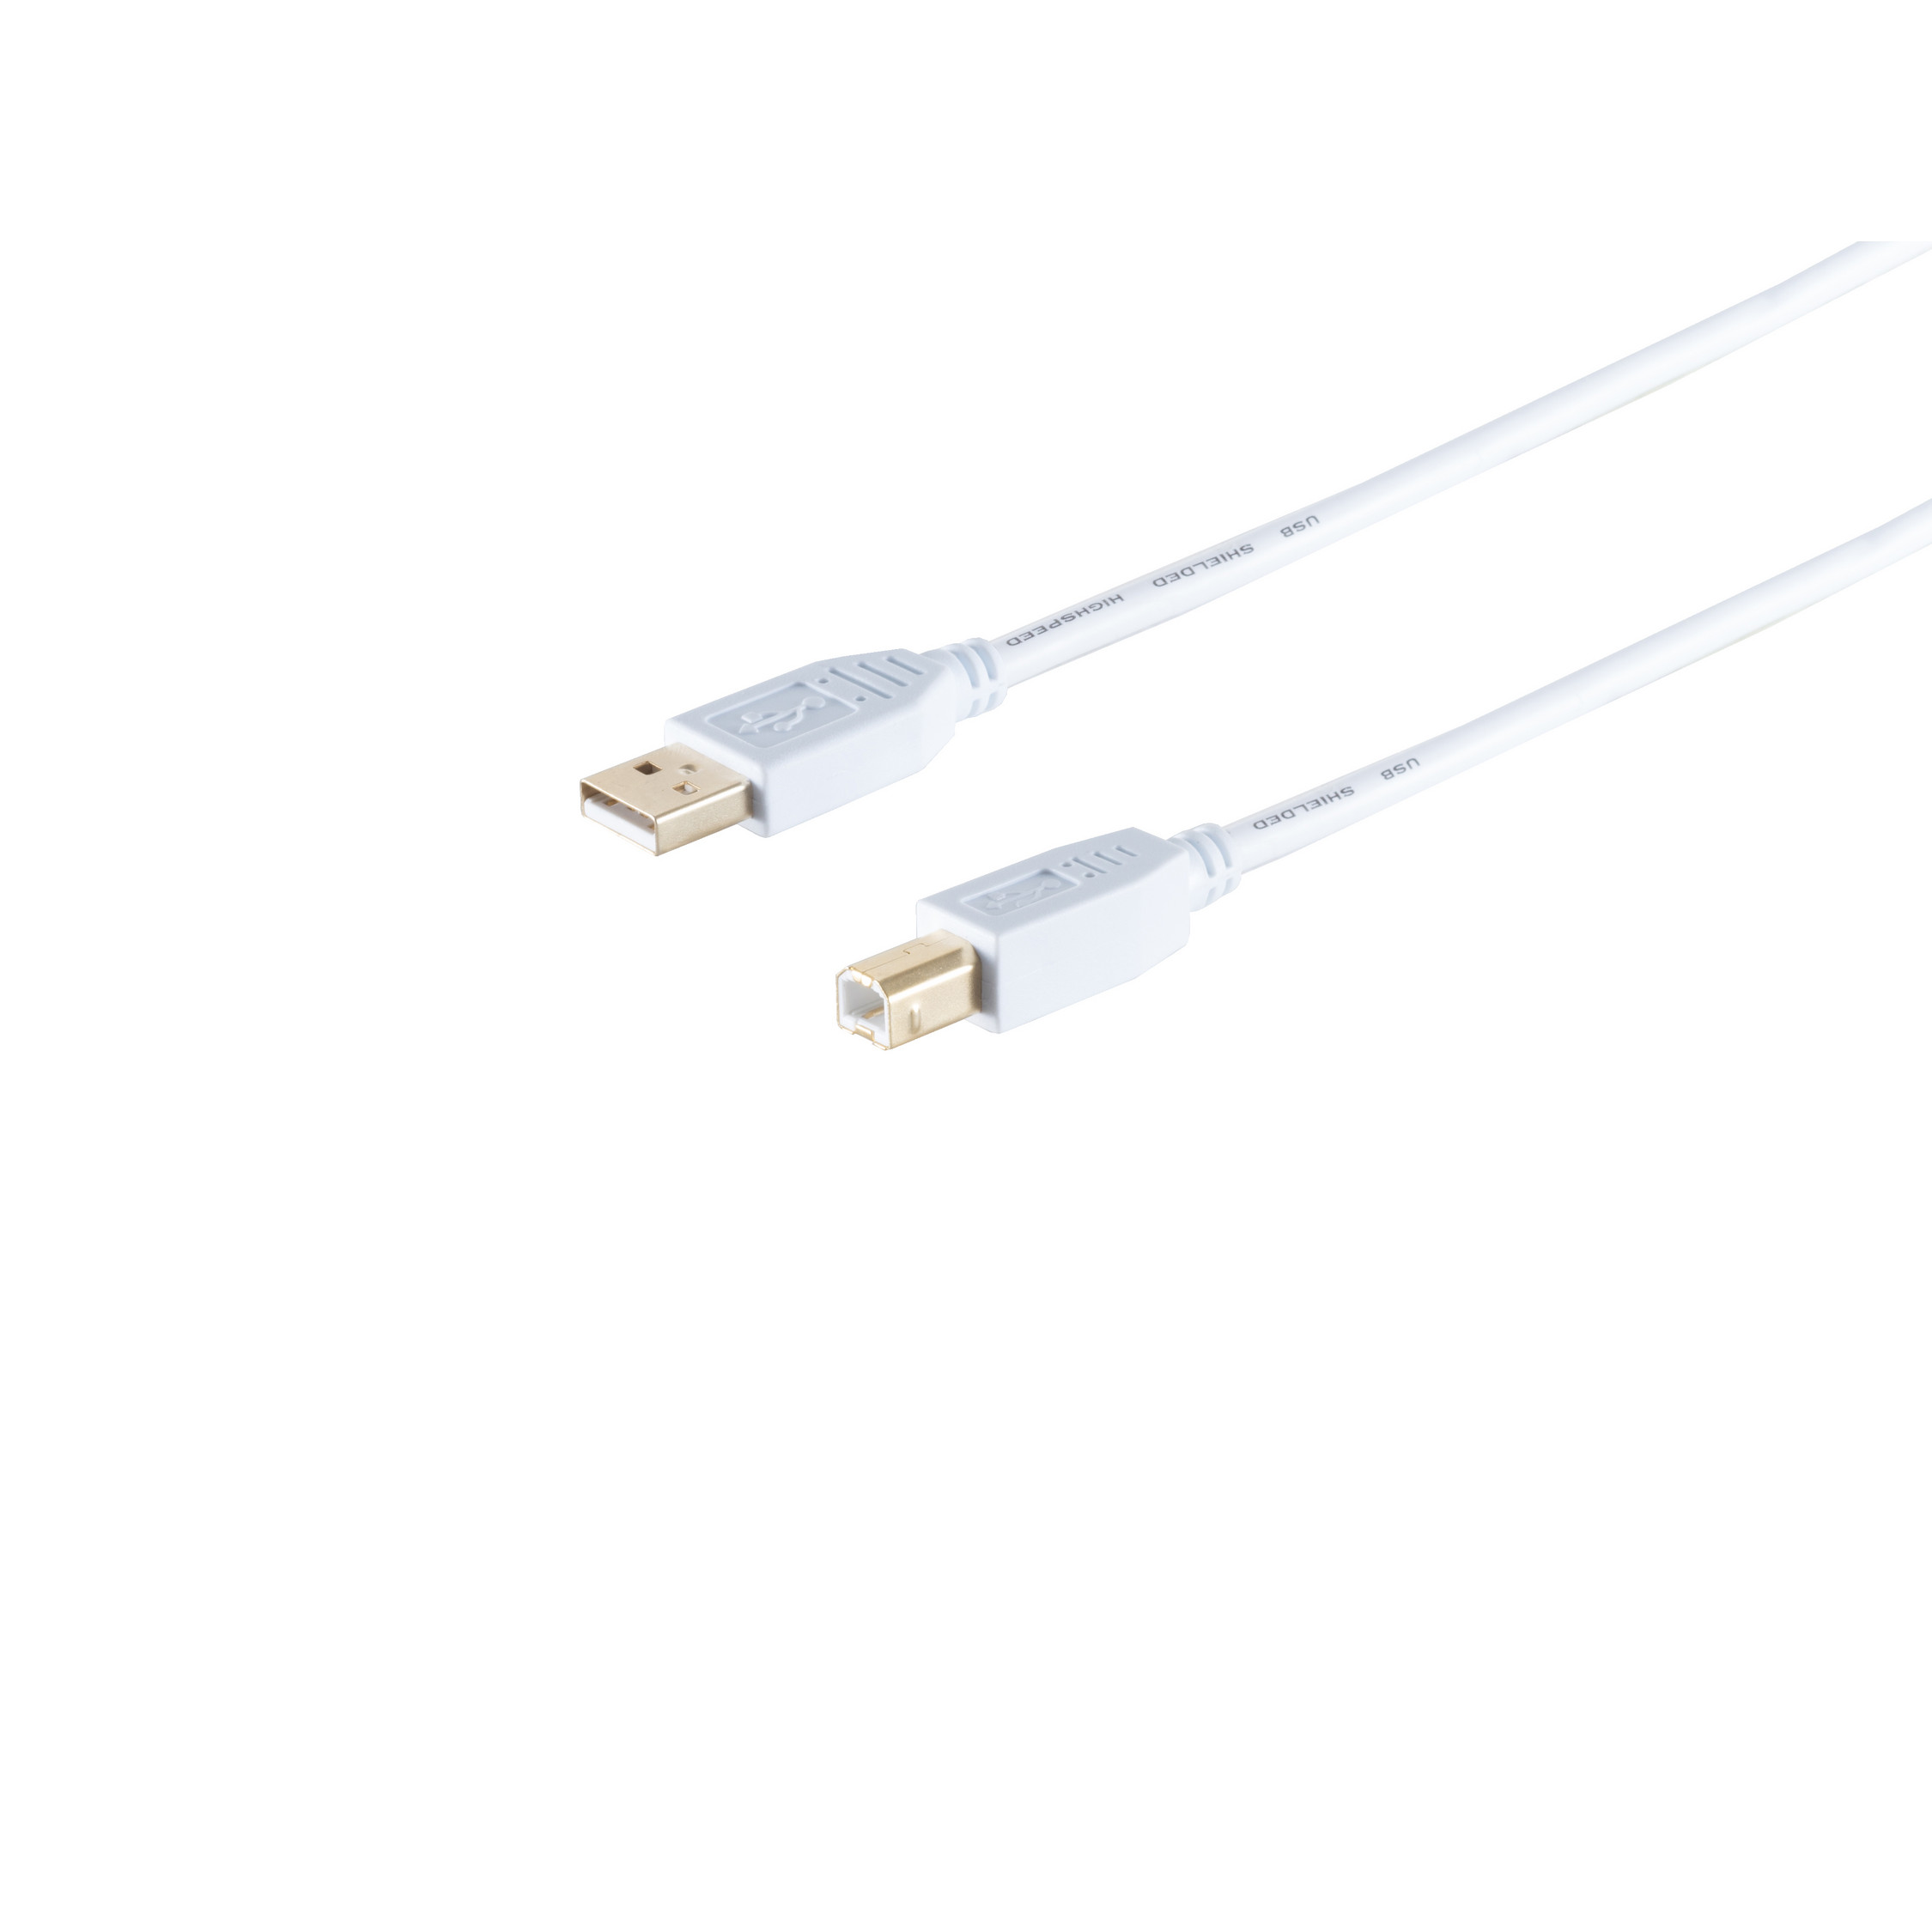 2.0, MAXIMUM S/CONN Kabel 2.0 Speed Stecker, USB 1,0m weiß, A/B USB Kabel, CONNECTIVITY USB High